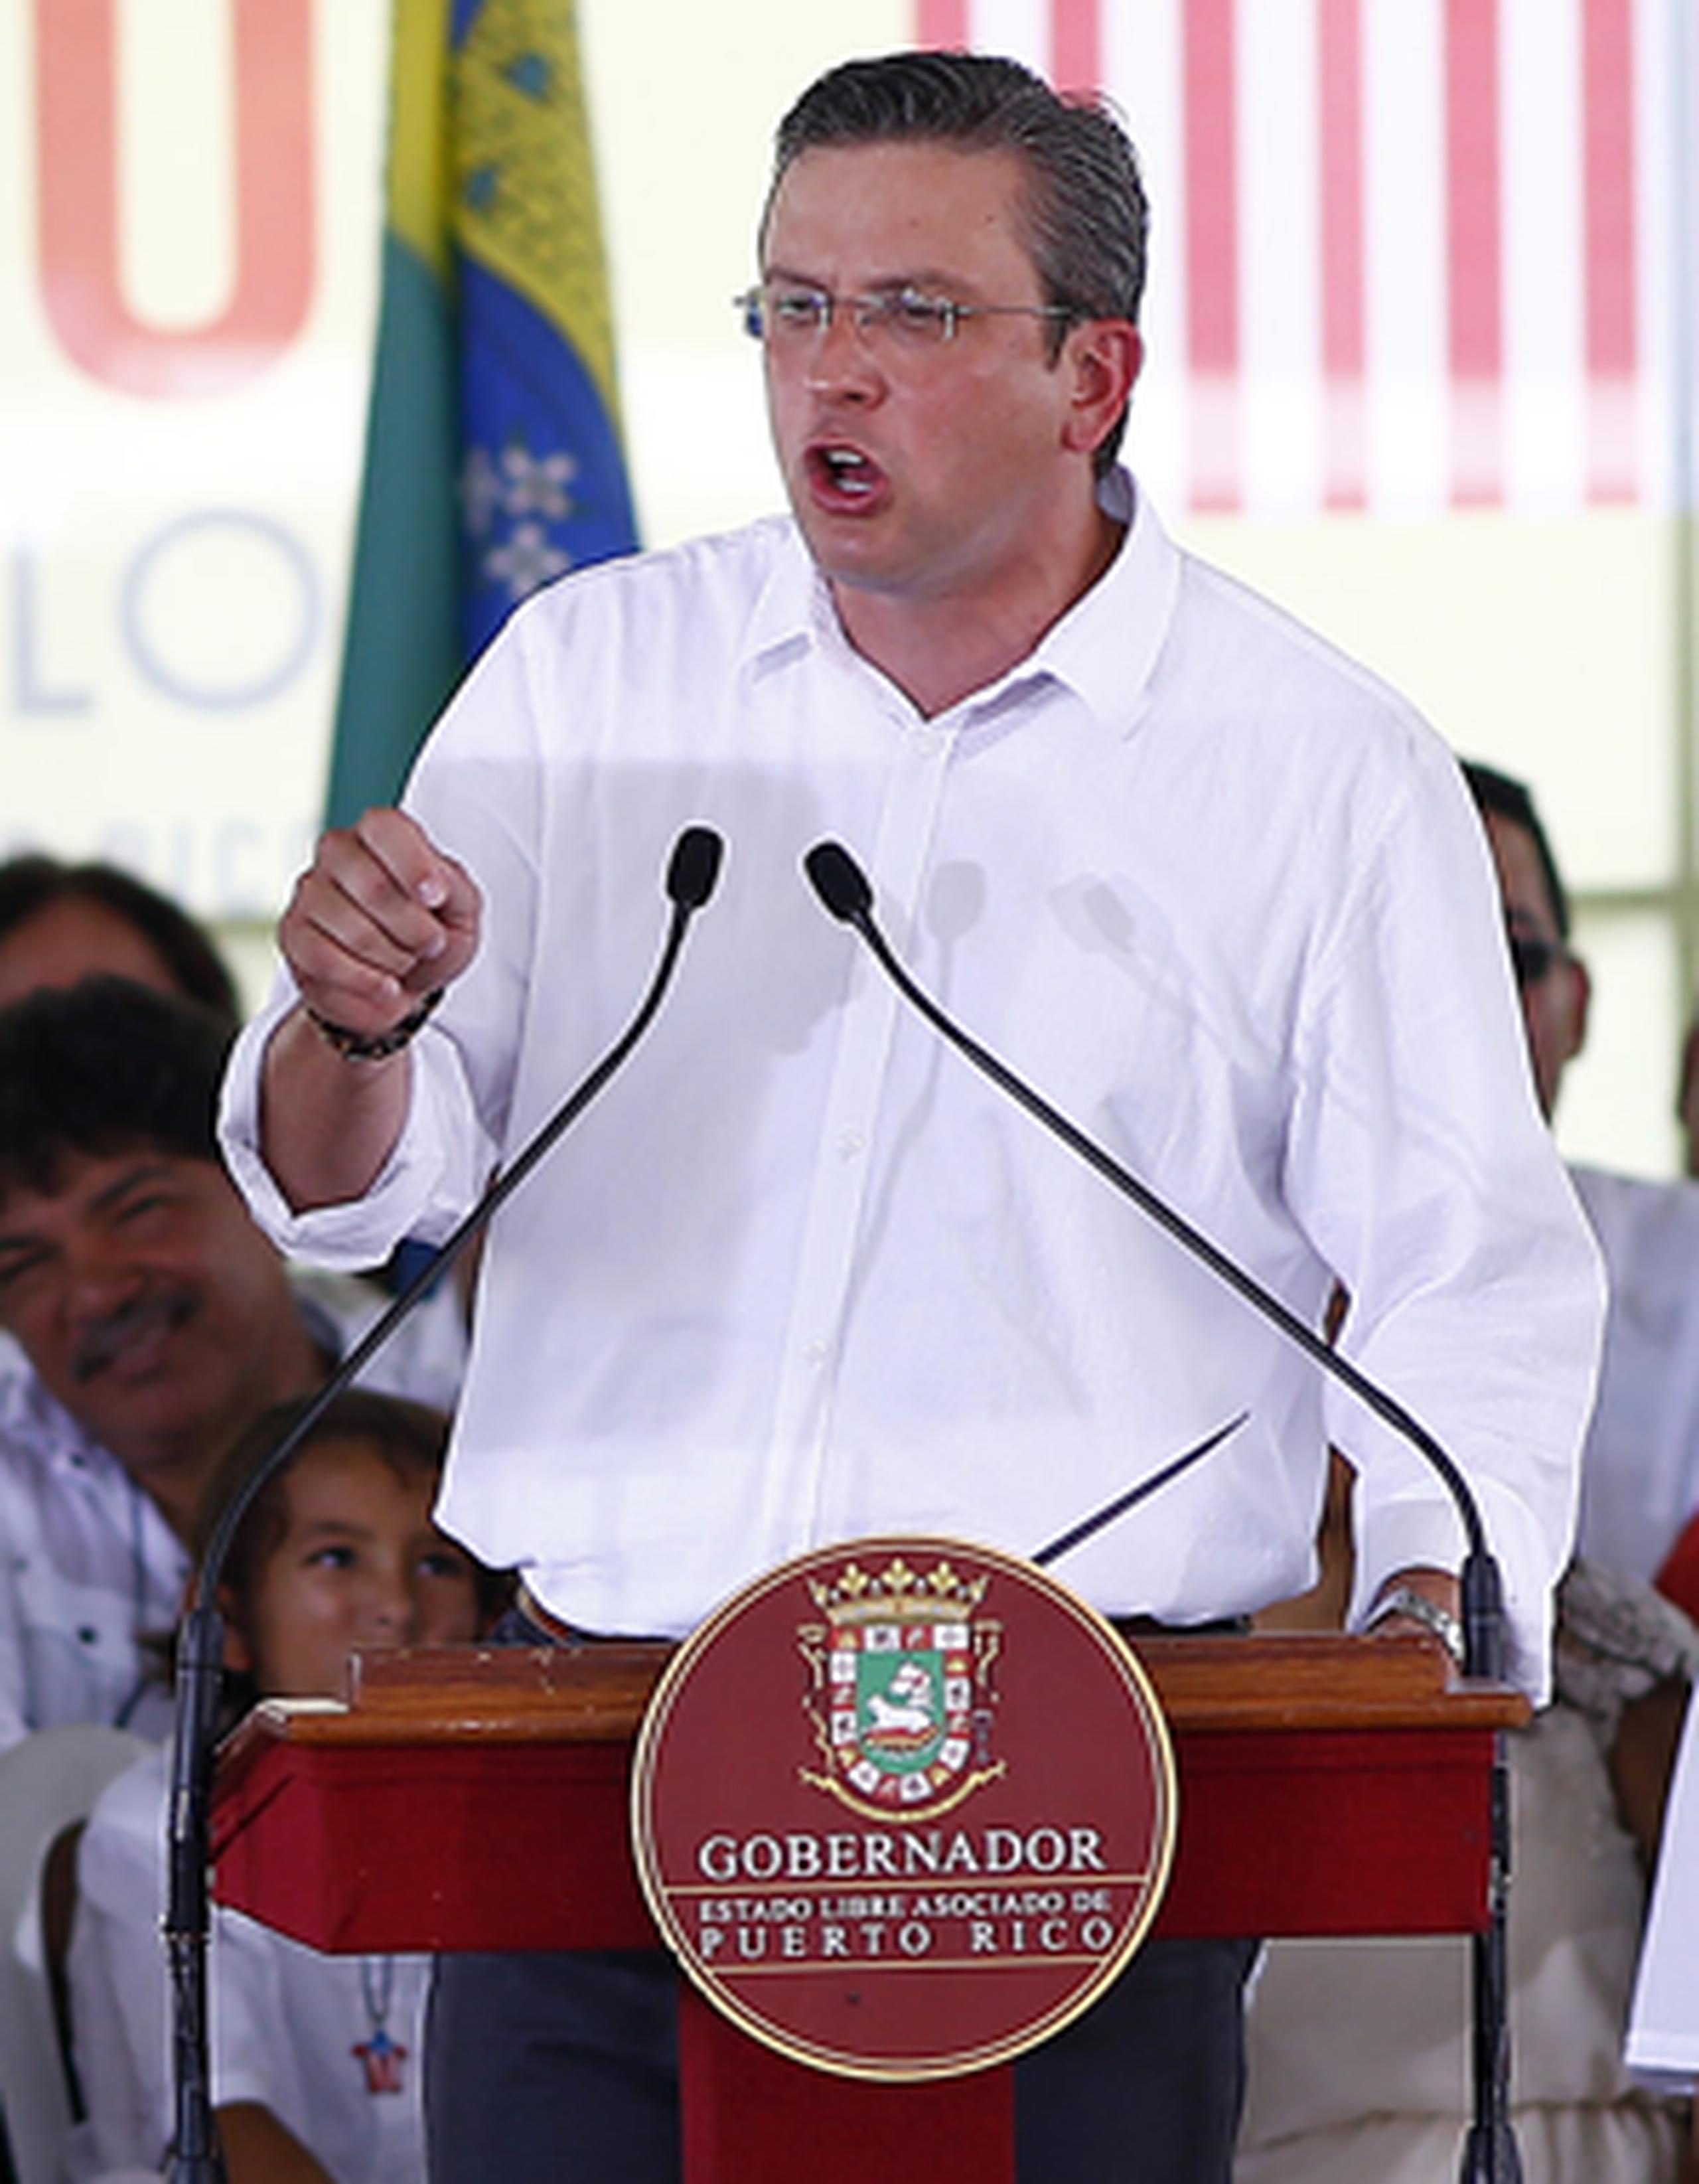 El gobernador Alejandro García Padilla ofreció un discurso durante la celebración del aniversario del ELA. (jose.madera@gfrmedia.com)